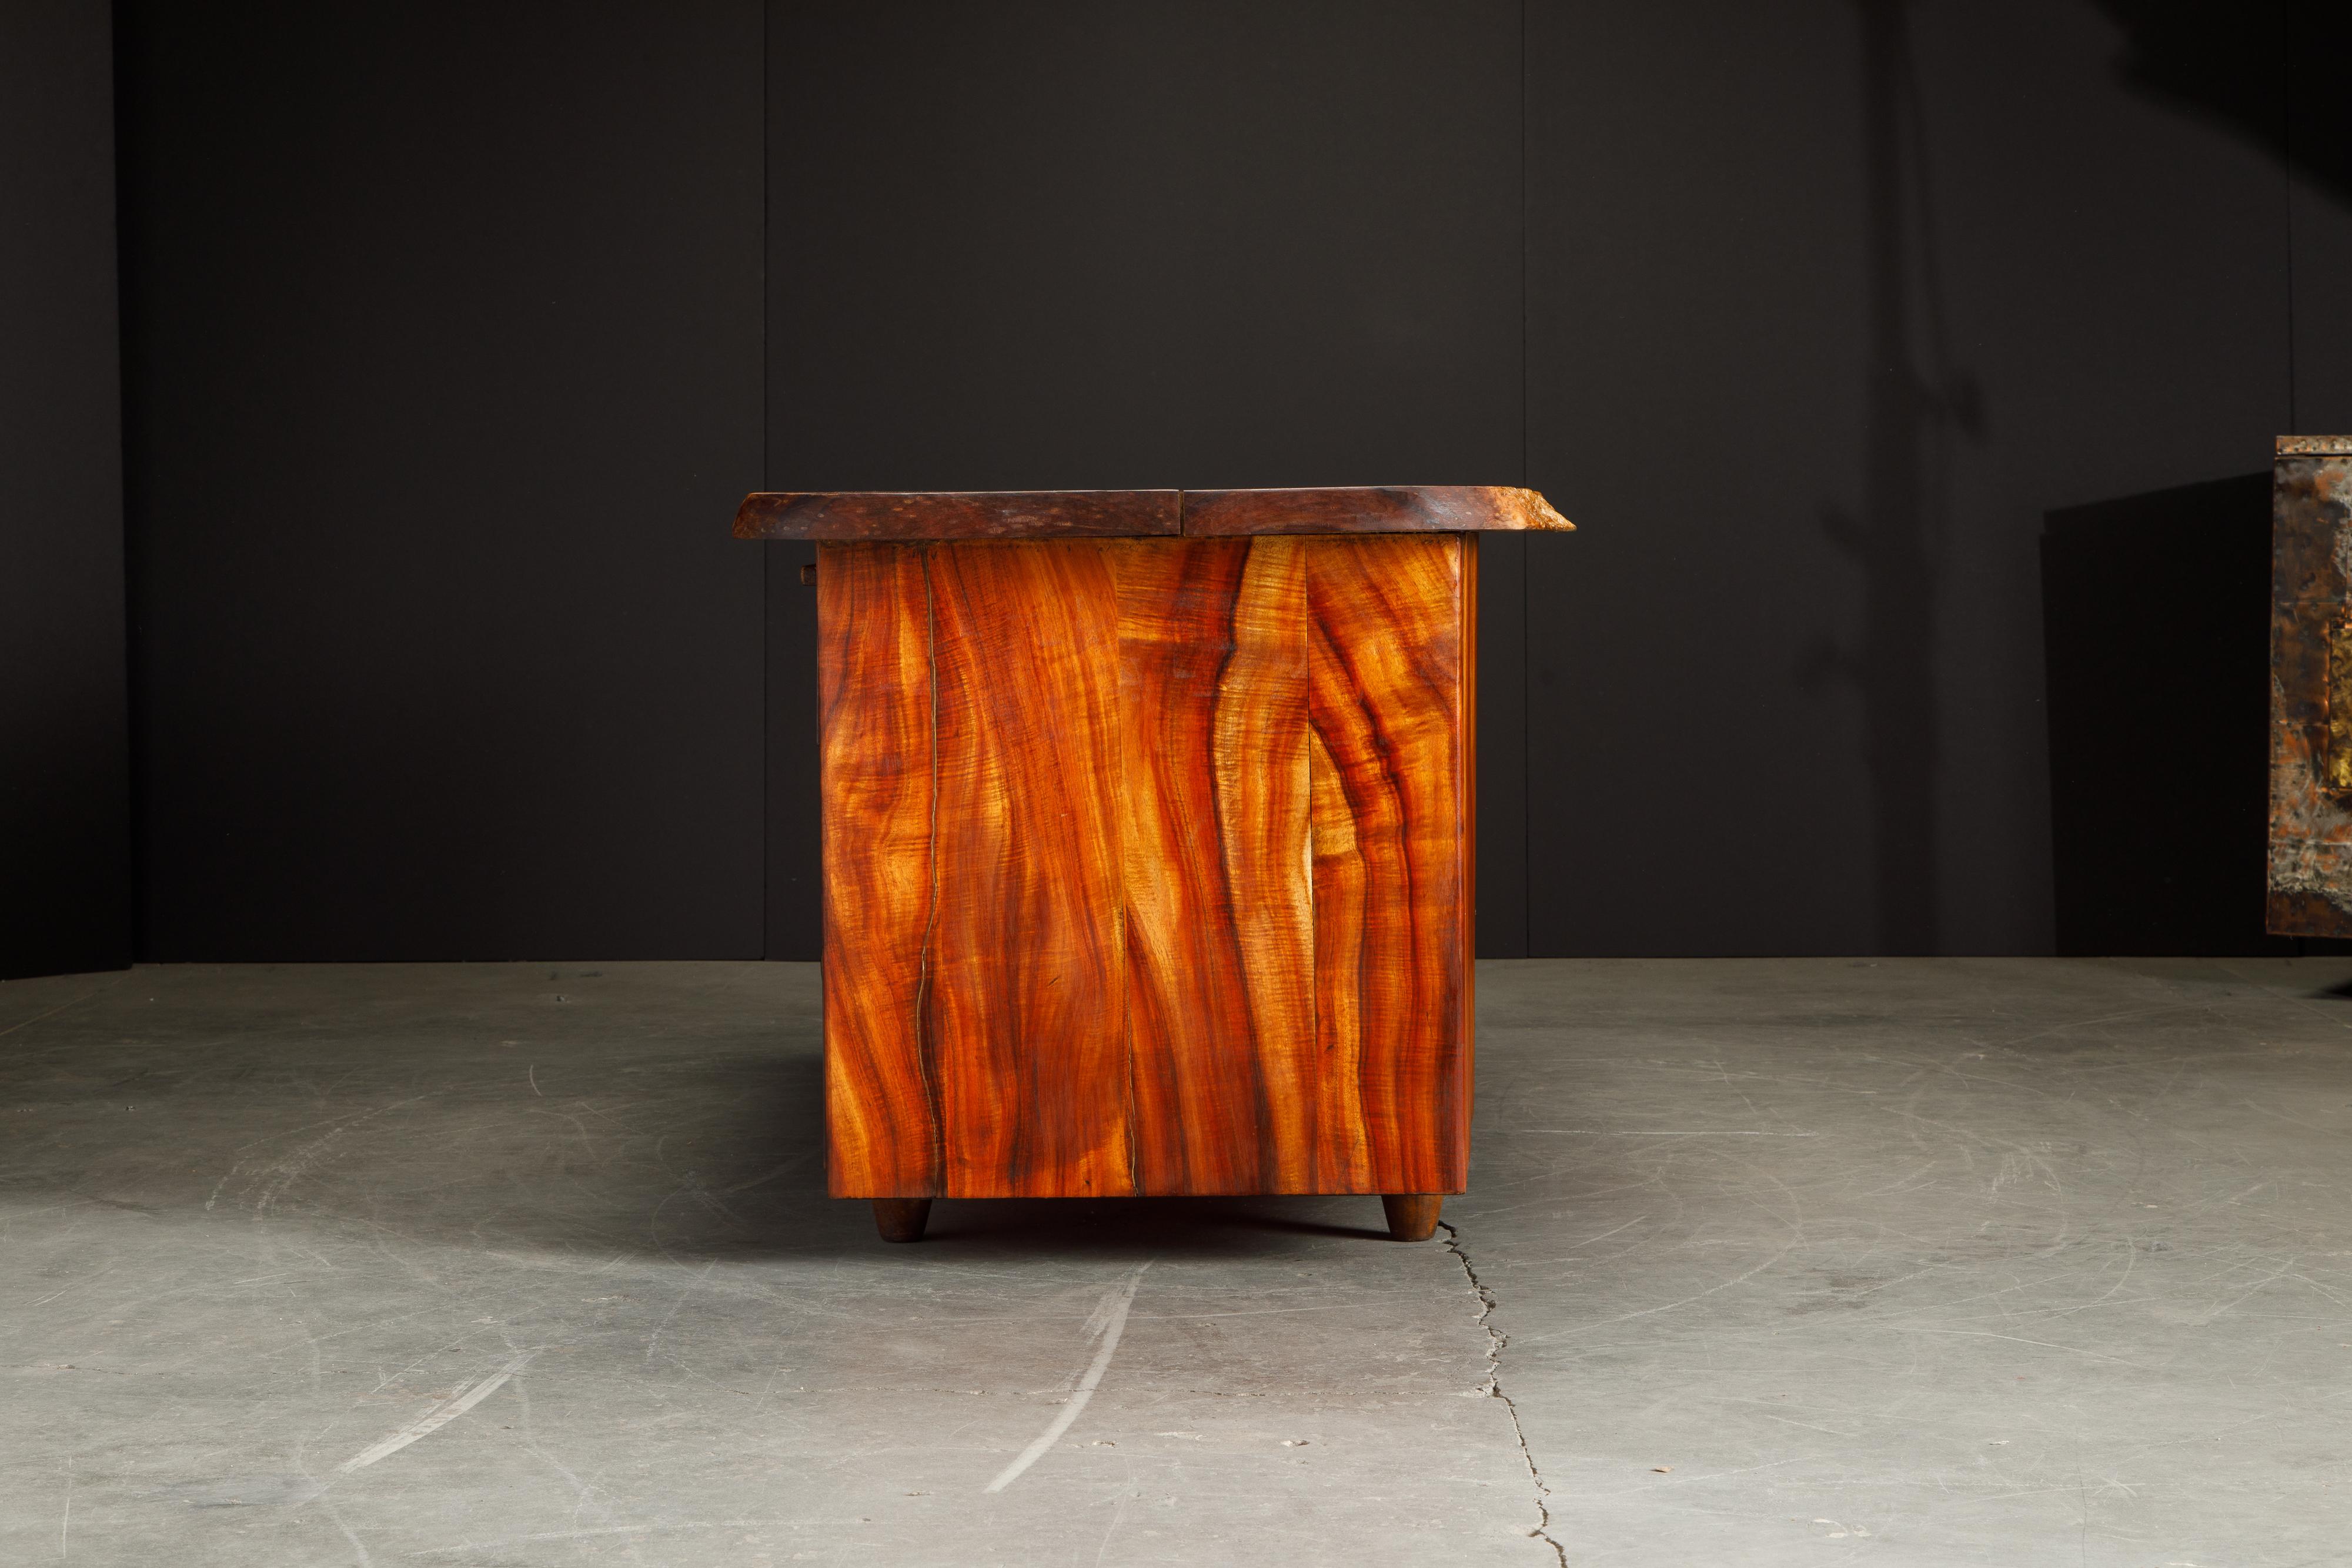 wood slab desk